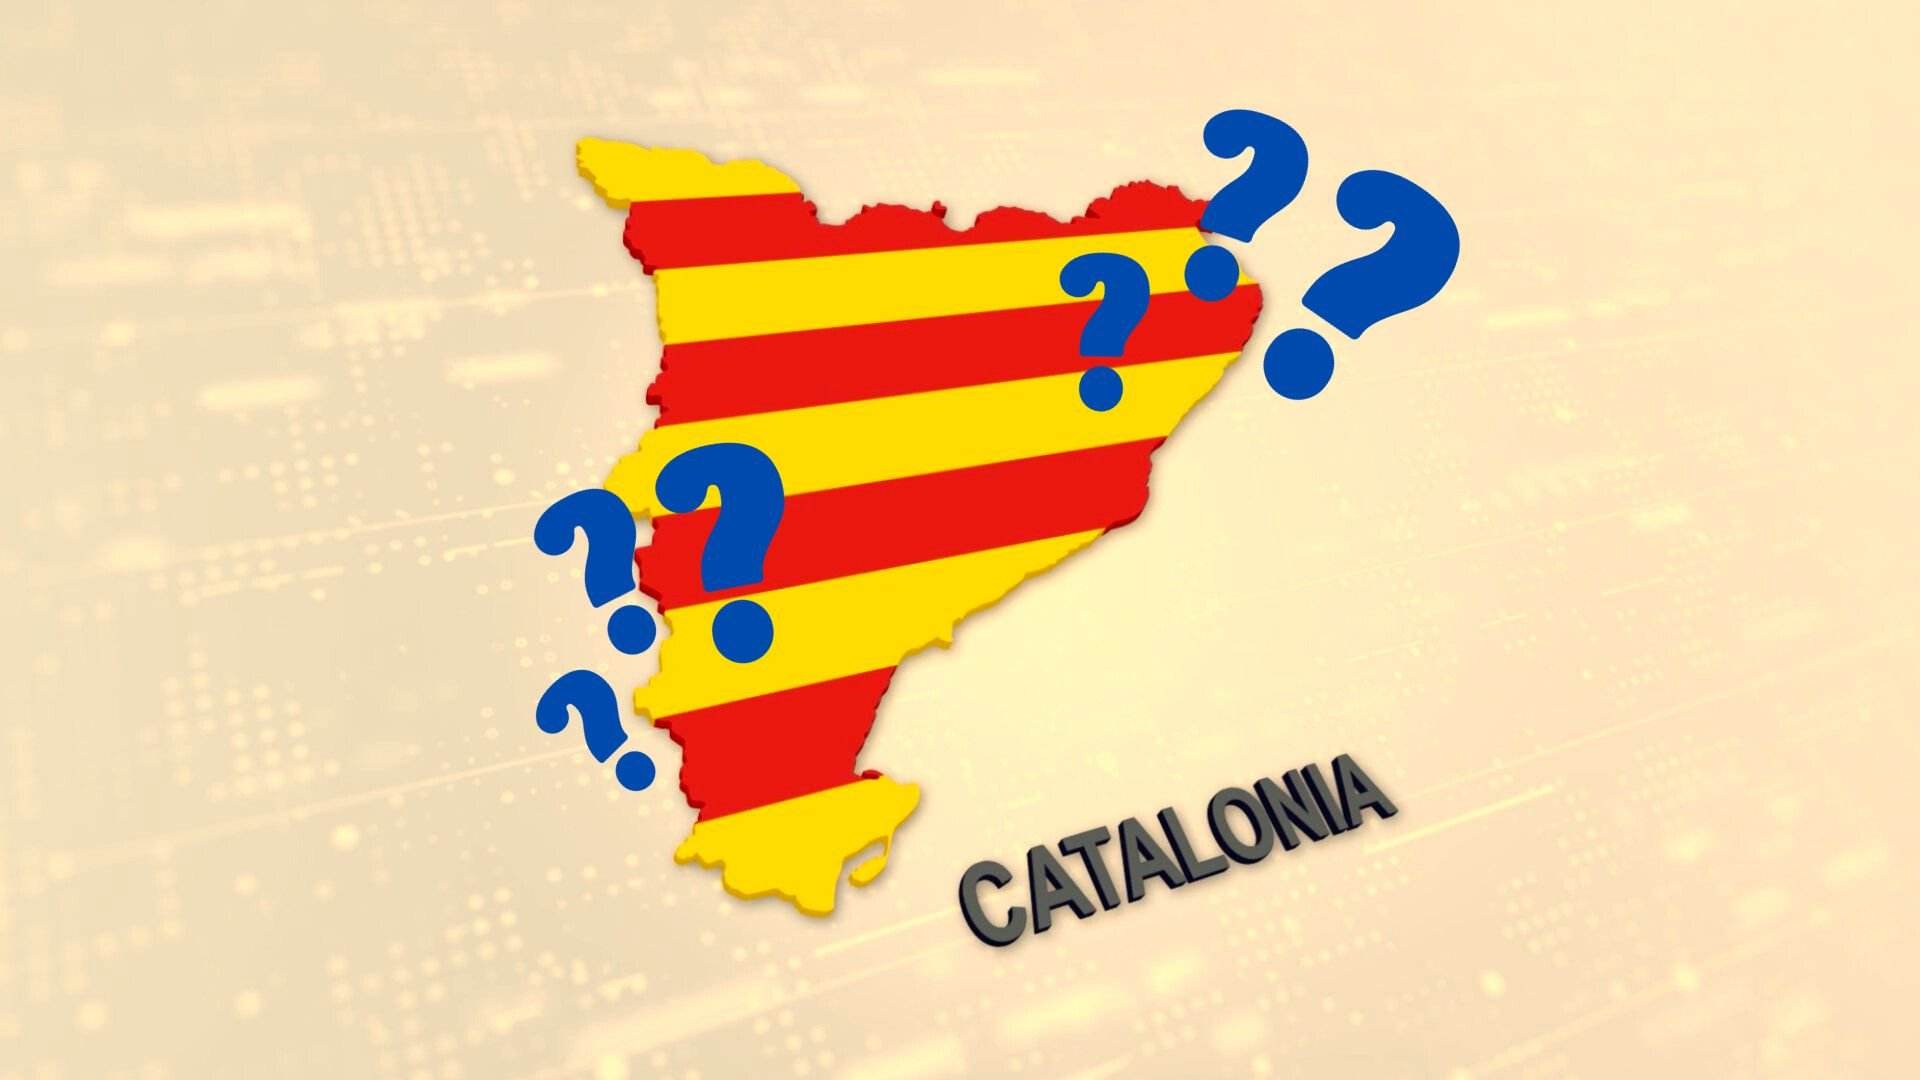 Palabras en catalán que son completamente diferentes alrededor de Catalunya